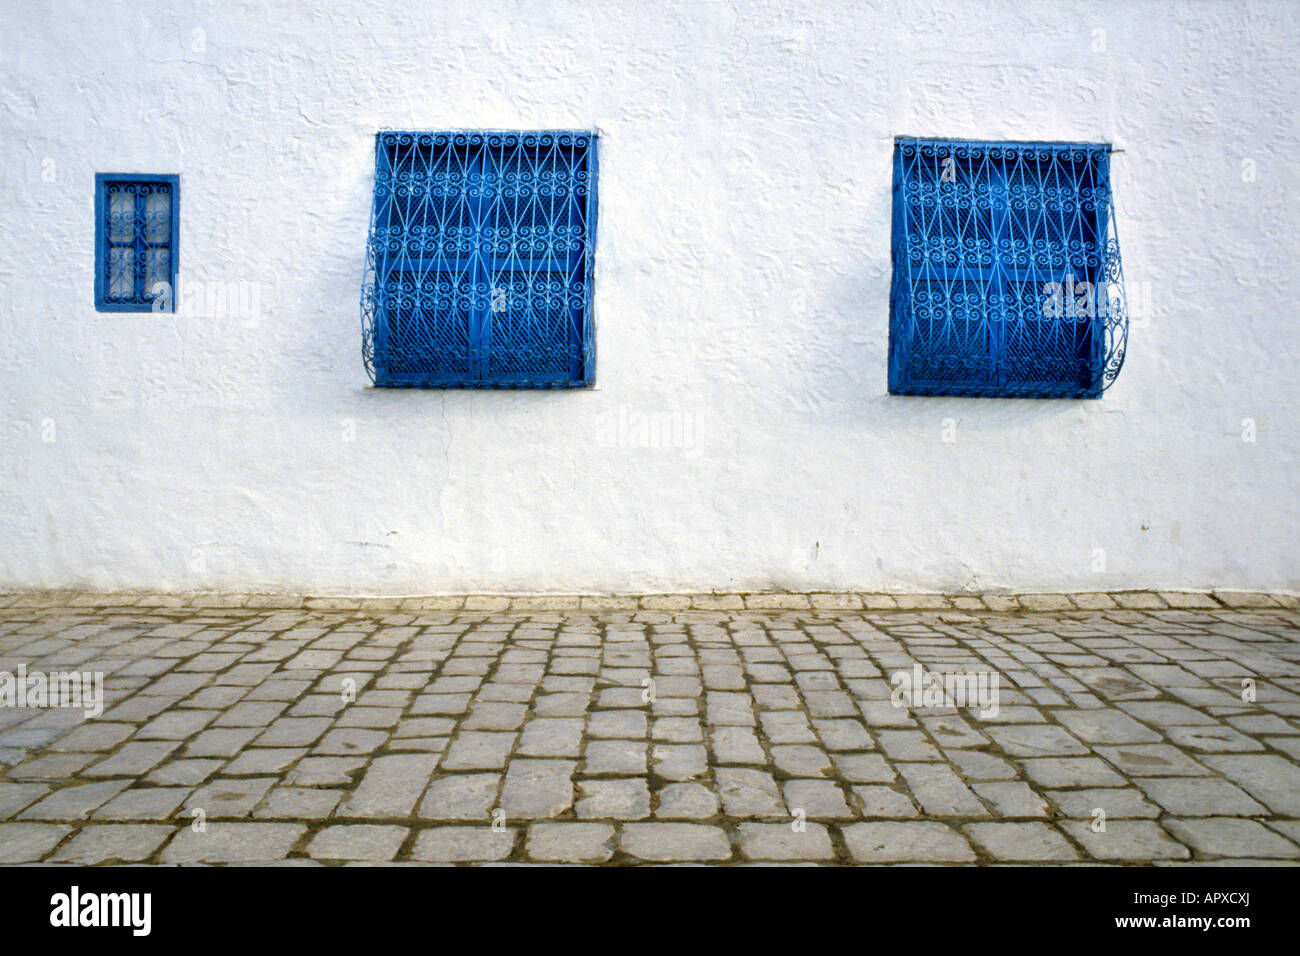 Bürgersteig in Sidi Bou Said zeigt Stein Pflasterung und drei blauen Fenstern Stockfoto